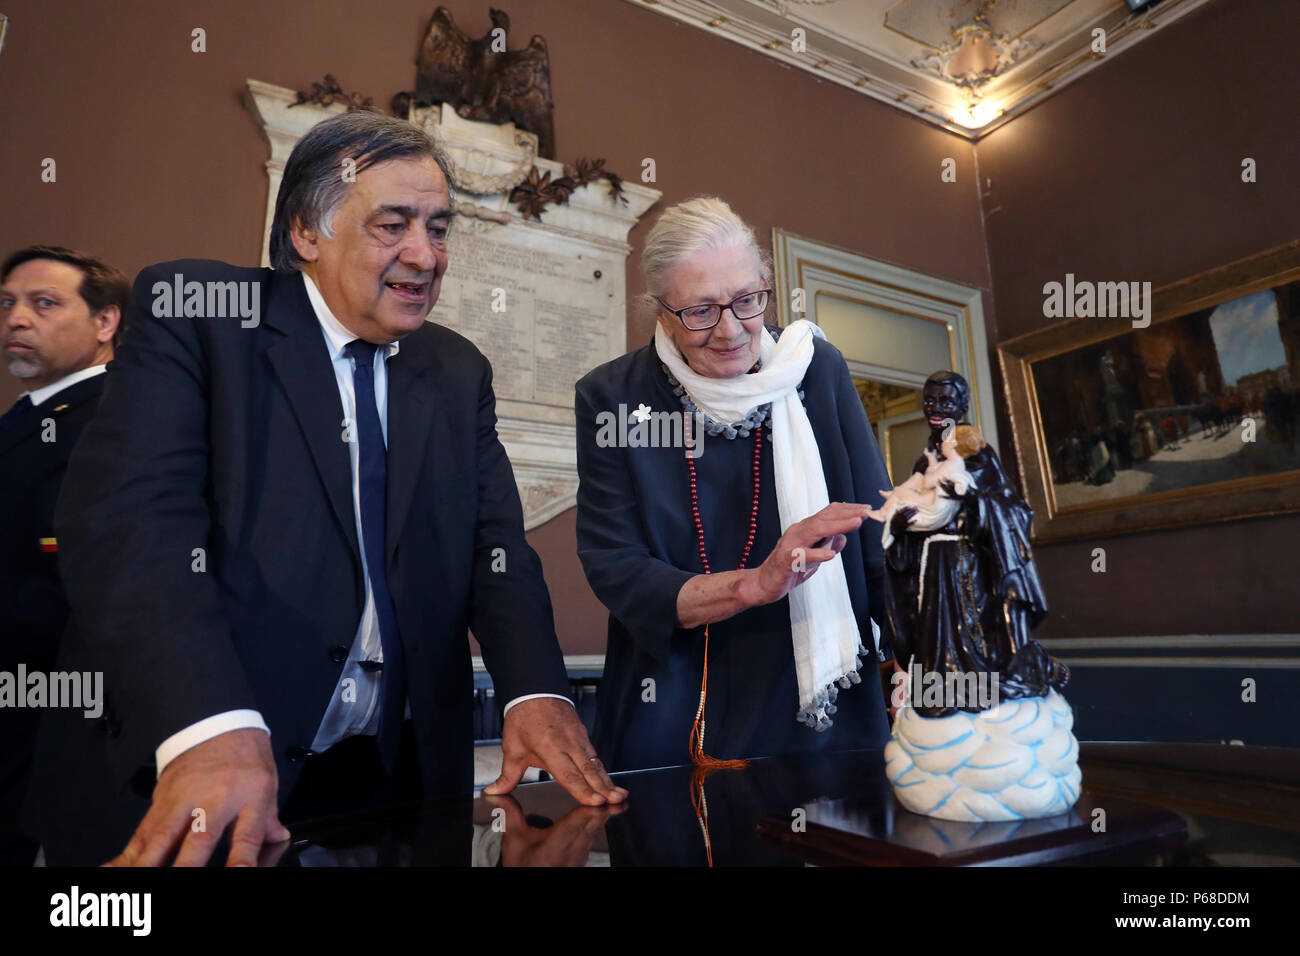 Palerme, Vanessa Redgrave a reçu au Palazzo delle Aquile par le maire Leoluca Orlando, est déplacé en parlant de migrants. 06/28/2018, Palerme, Italie Banque D'Images